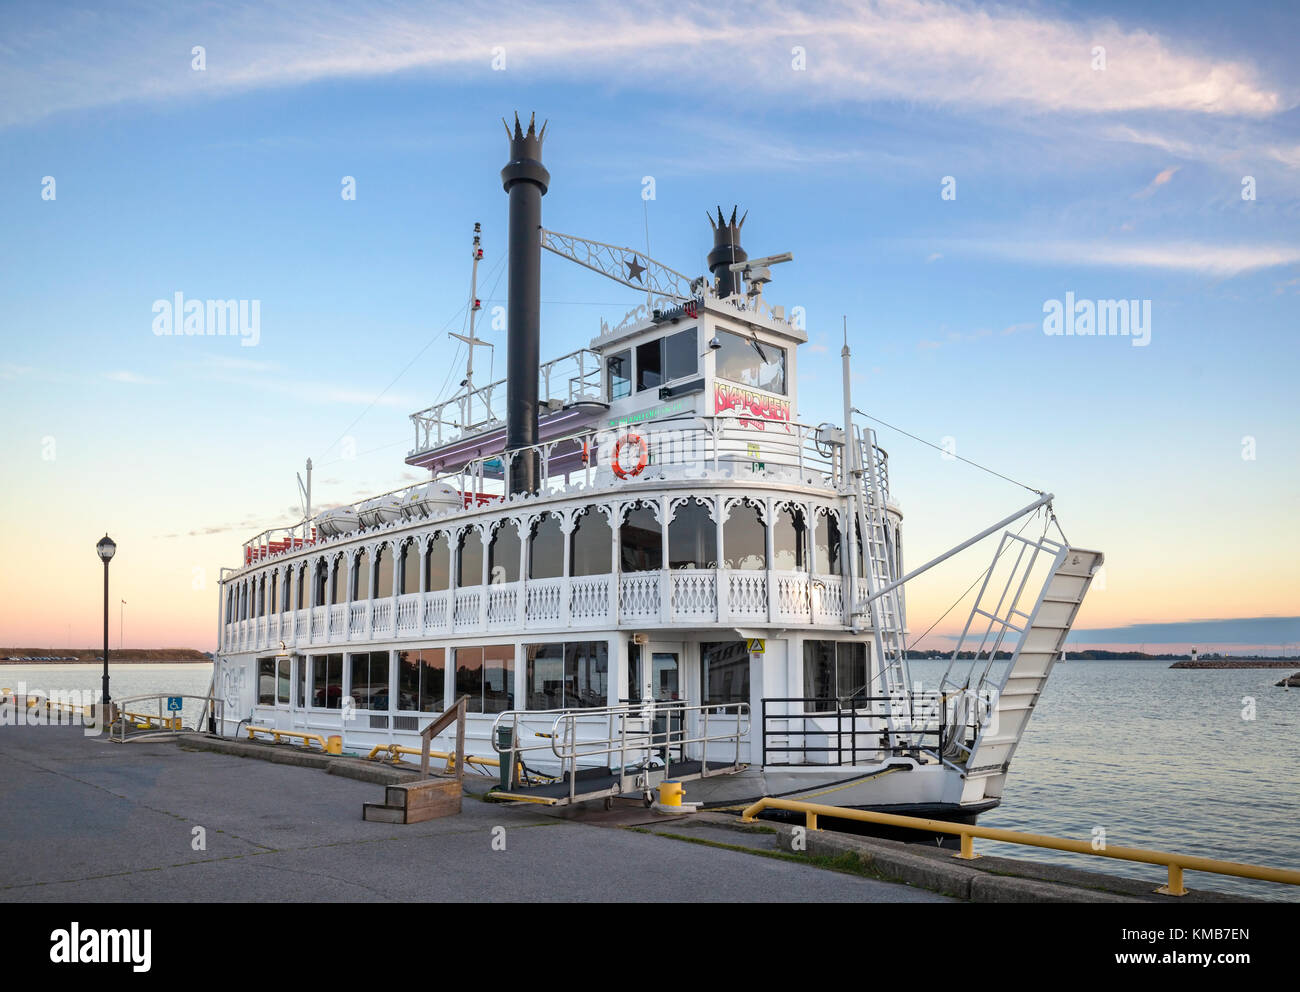 Die Insel Königin III ist ein Kreuzfahrtschiff in den Mississippi River Boat Stil gebaut und Angedockten bei Crawford Wharf in der Eidgenossenschaft Becken. Stockfoto